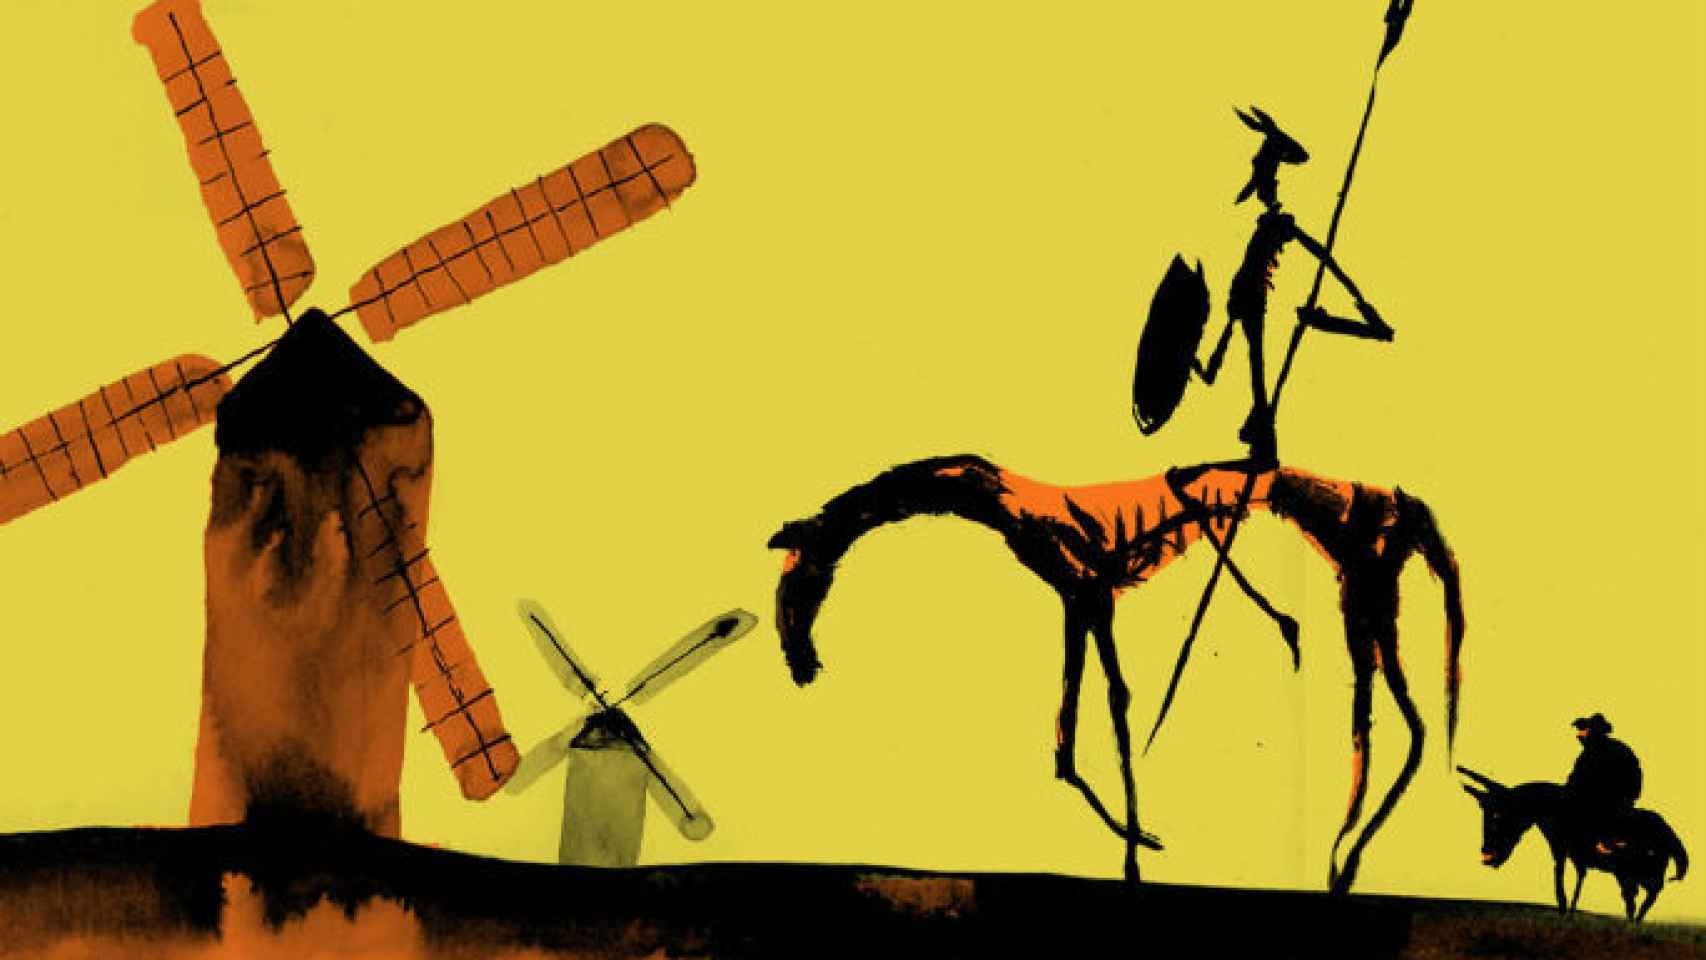 Necesitamos escuderos capaces de plantarle cara a Don Quijote para decirle que aquellos gigantes son en realidad molinos de viento